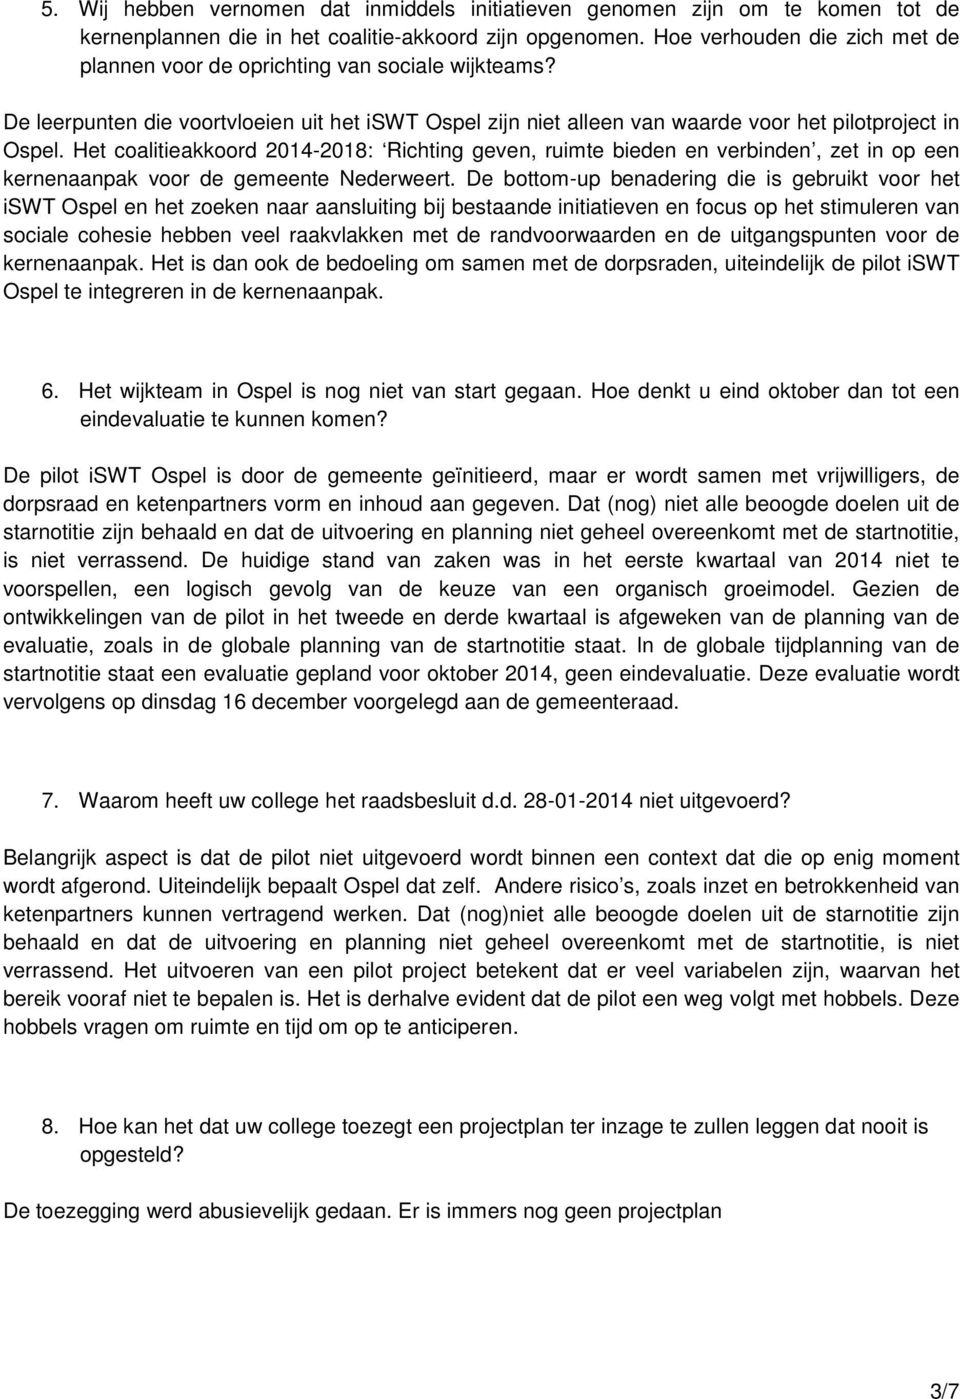 Het coalitieakkoord 2014-2018: Richting geven, ruimte bieden en verbinden, zet in op een kernenaanpak voor de gemeente Nederweert.